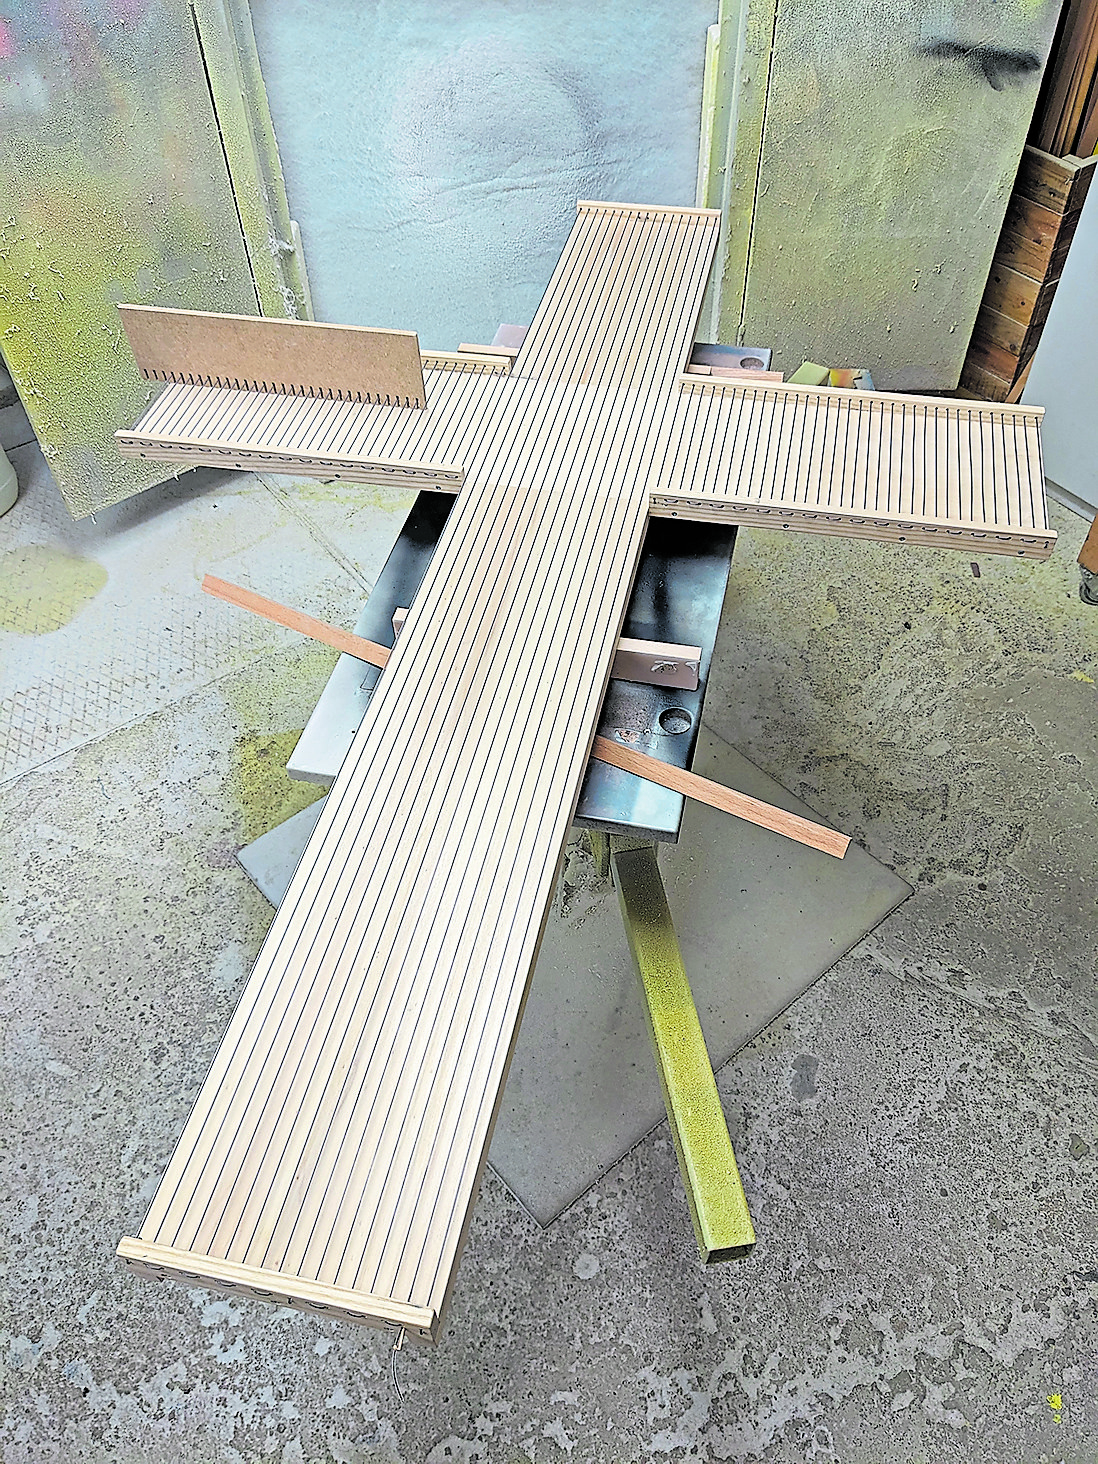 Weil der Kettfaden für das große Kreuz stärker sein musste, verzog sich anfangs das Holz. (c) Tobias Schroeder